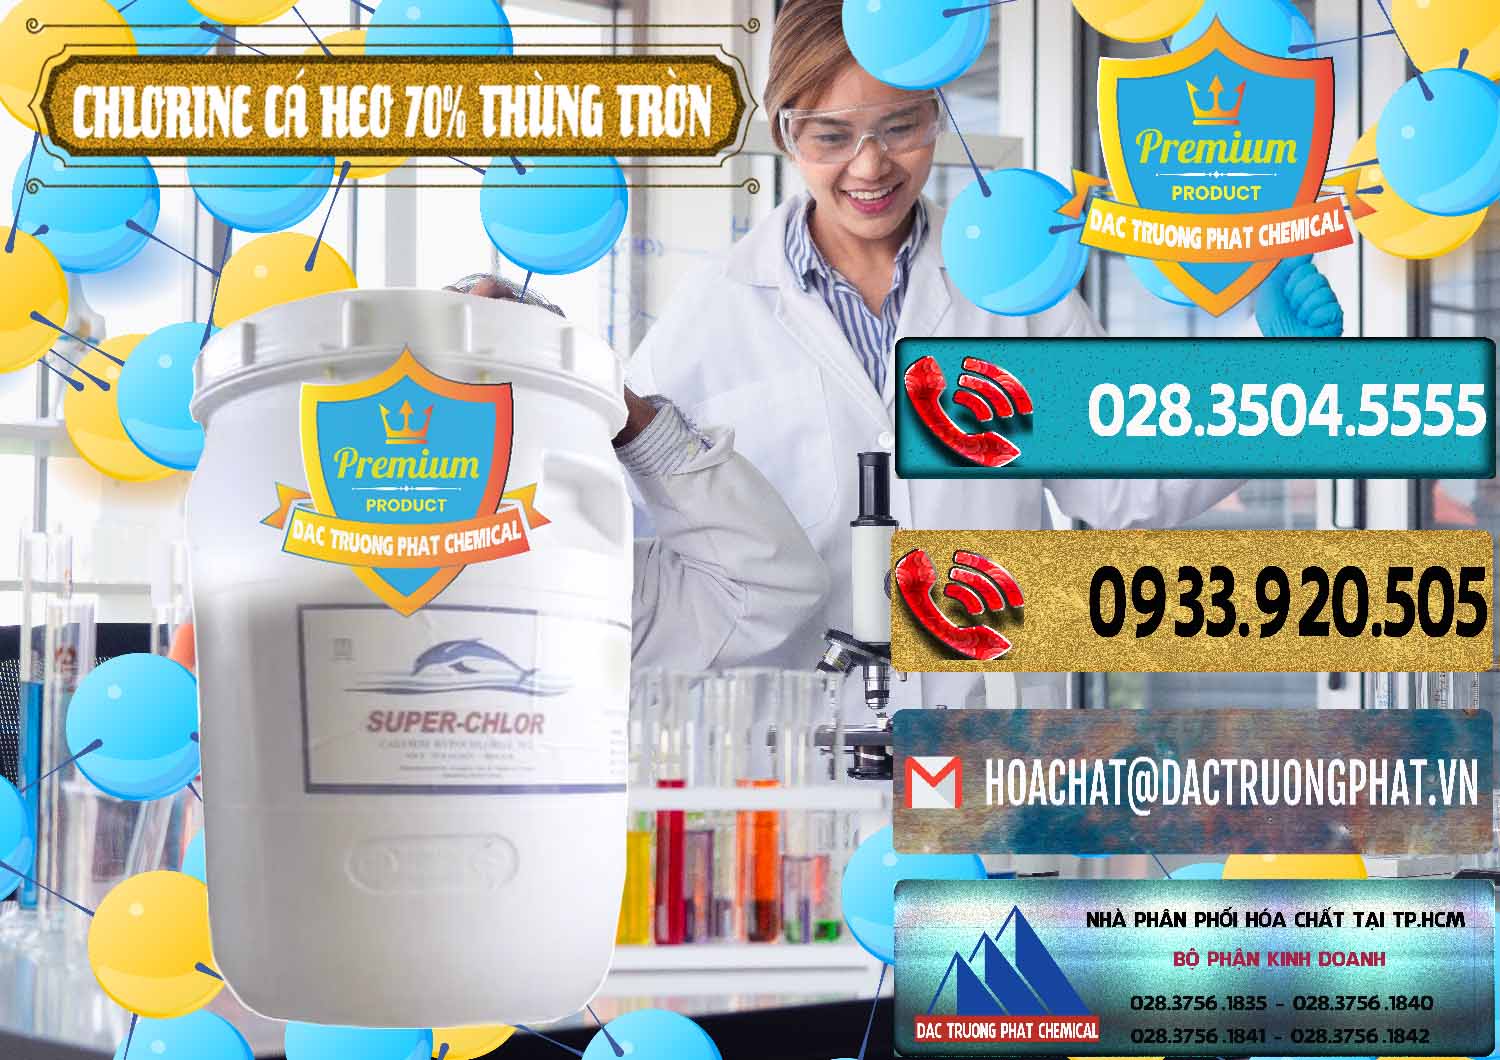 Kinh doanh và bán Clorin - Chlorine Cá Heo 70% Super Chlor Thùng Tròn Nắp Trắng Trung Quốc China - 0239 - Nơi phân phối ( cung cấp ) hóa chất tại TP.HCM - hoachatdetnhuom.com